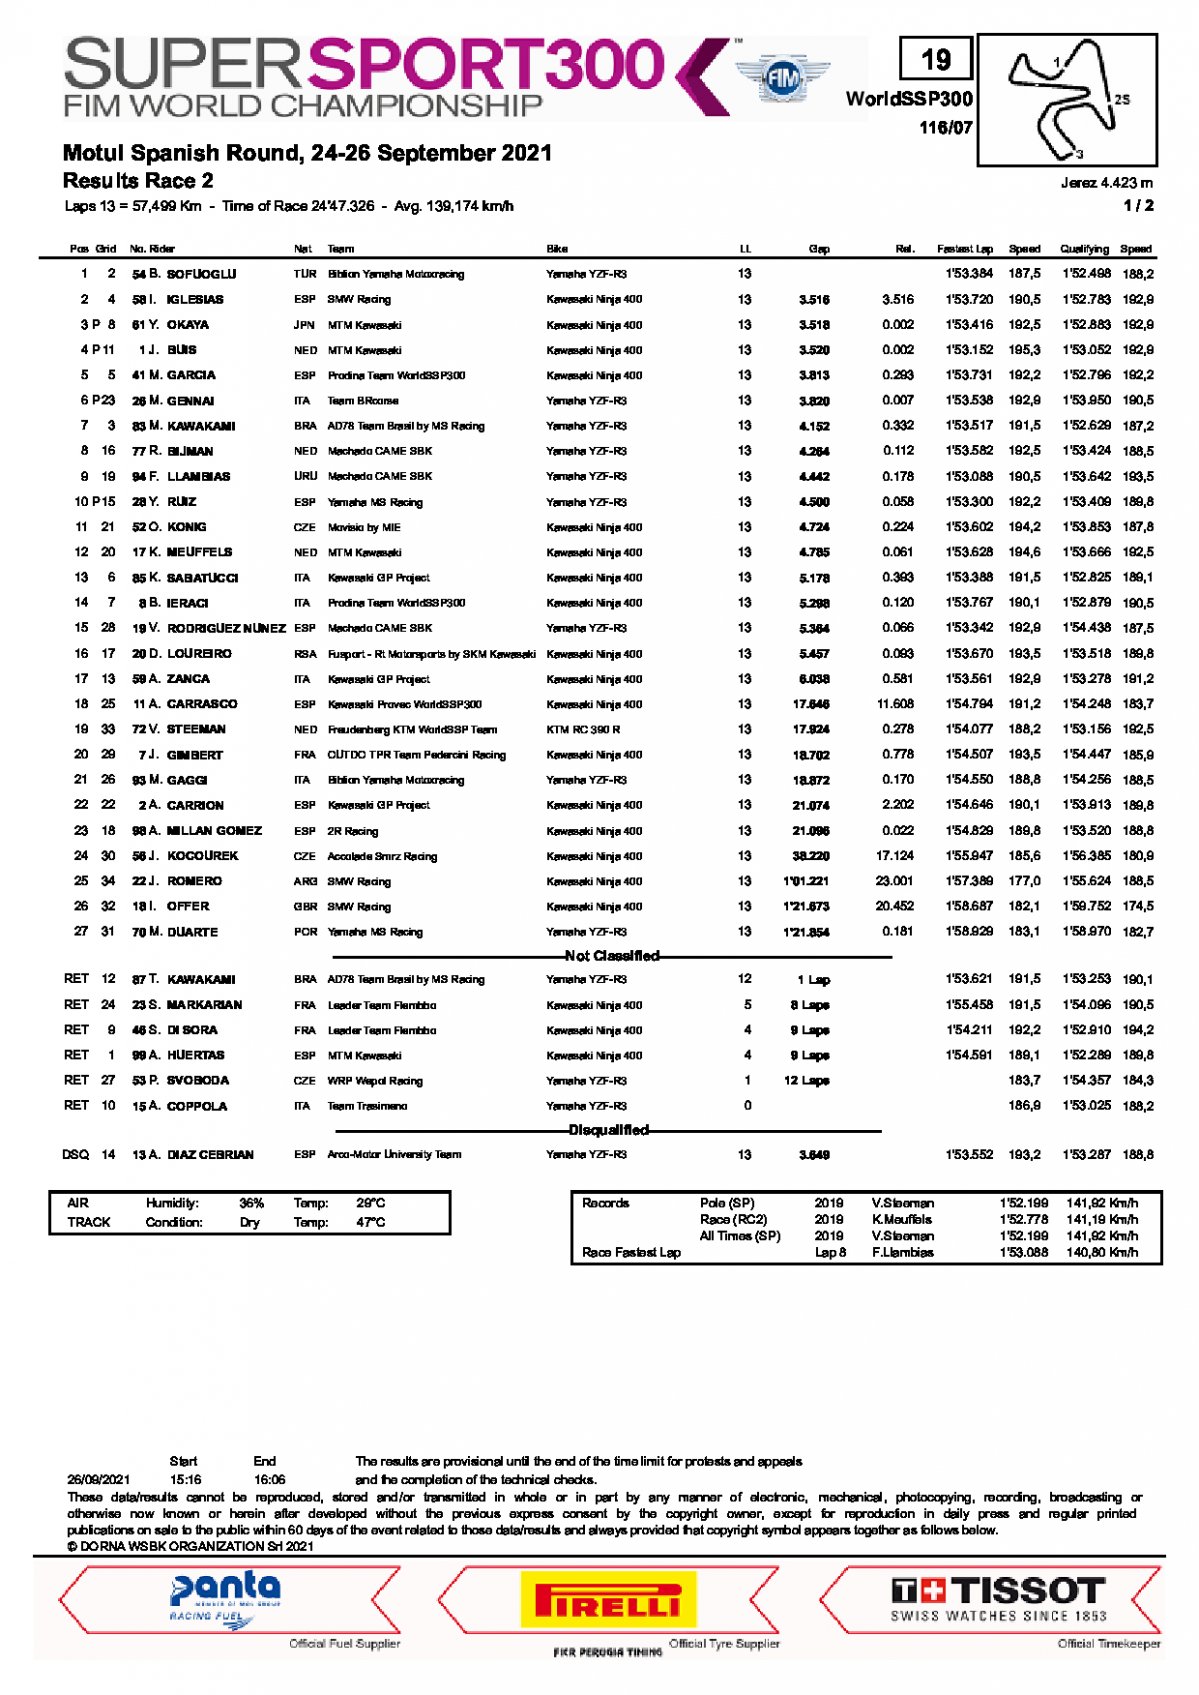 Результаты 2-й гонки WorldSSP300, Circuito de Jerez (26/09/2021)